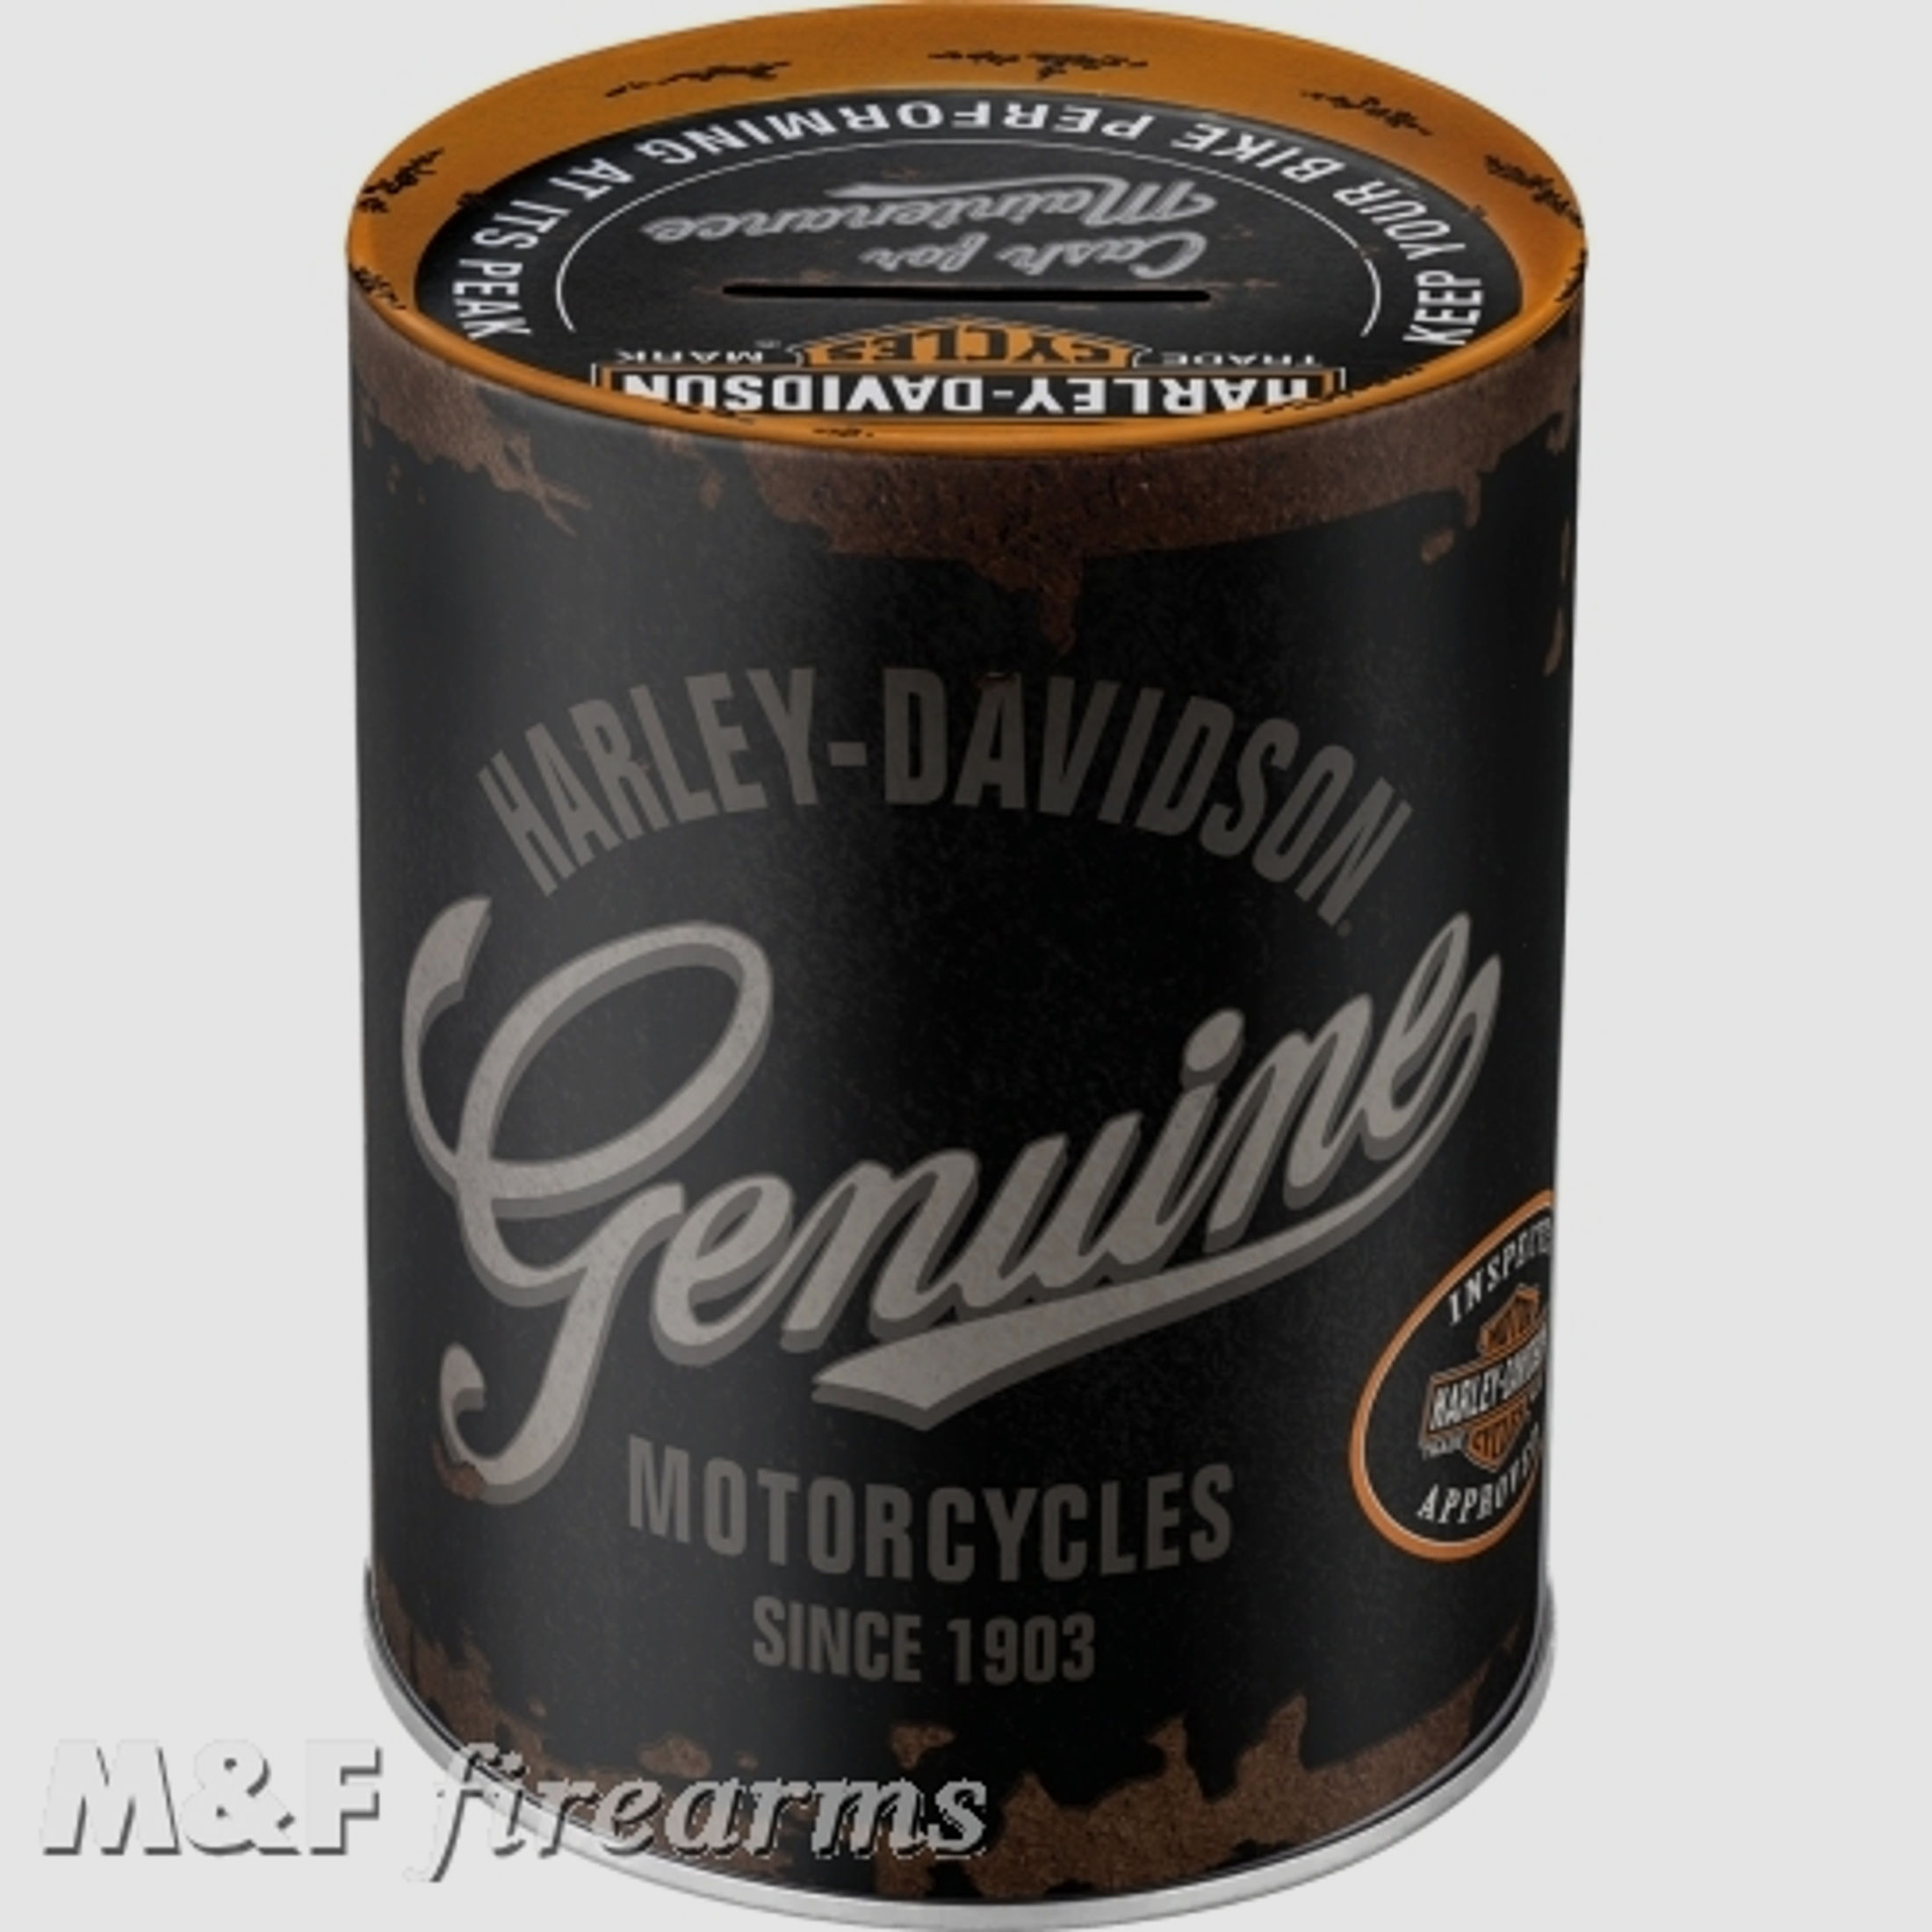 Harley-Davidson "Genuine Logo" Spardose ca. 13 (Höhe) x 10 (Durchmesser) cm von Nostalgic-Art